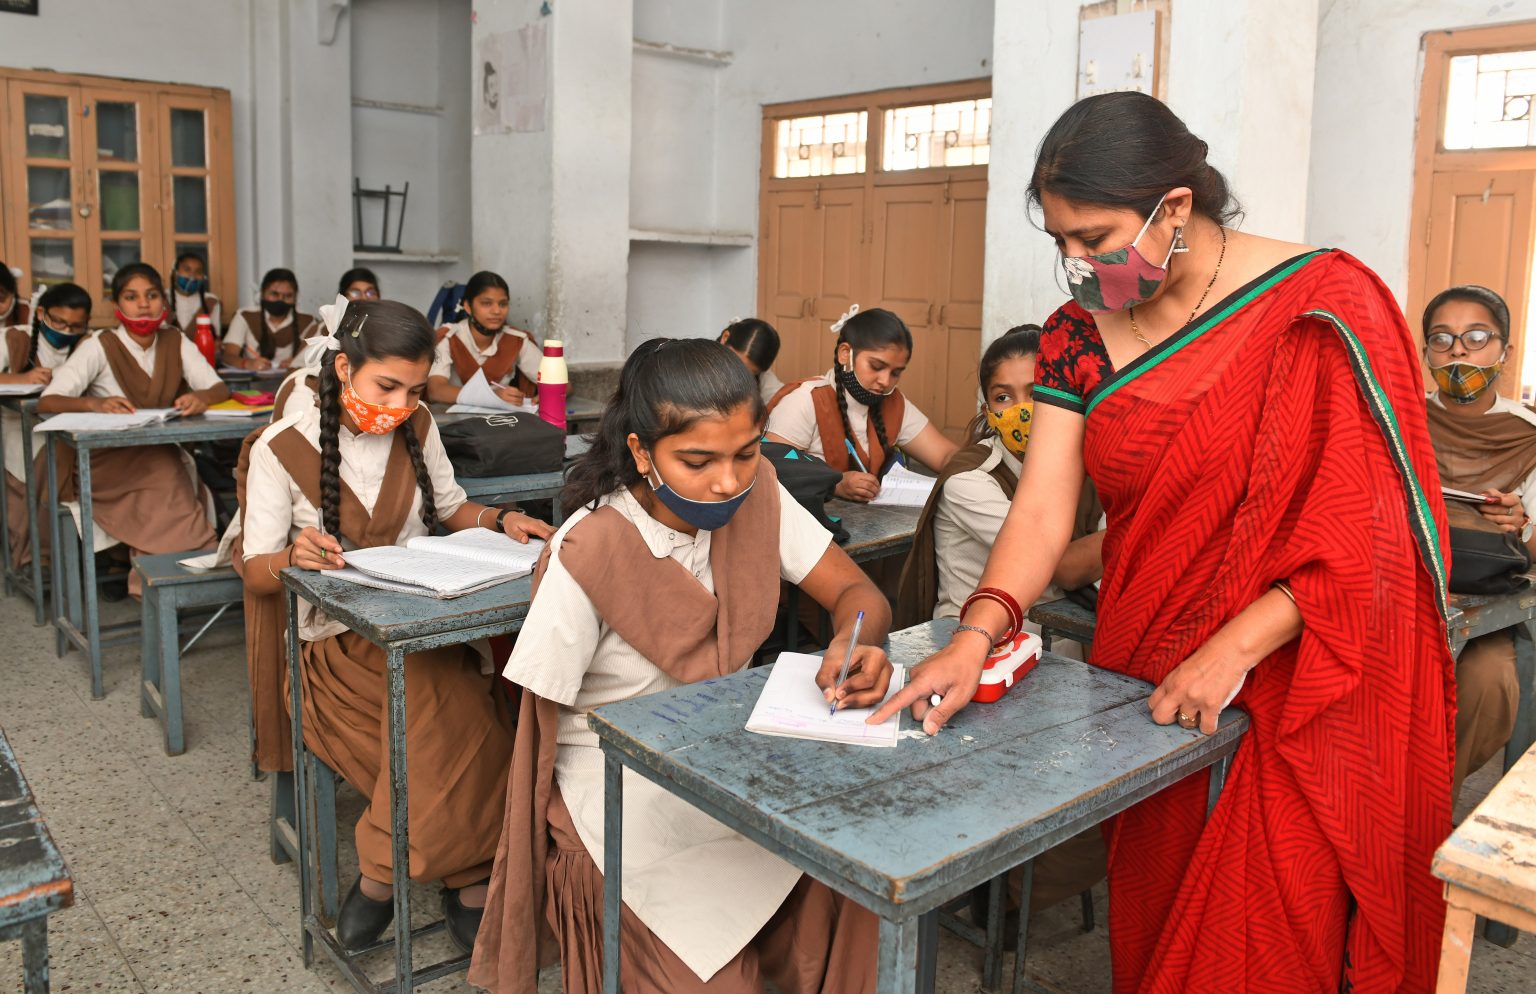 učionica u kojoj nekoliko djevojčica sjedi za školskim klupama, učiteljica stoji za jednom od klupa i pomaže jednoj od djevojčica kojoj nedostaje ruka